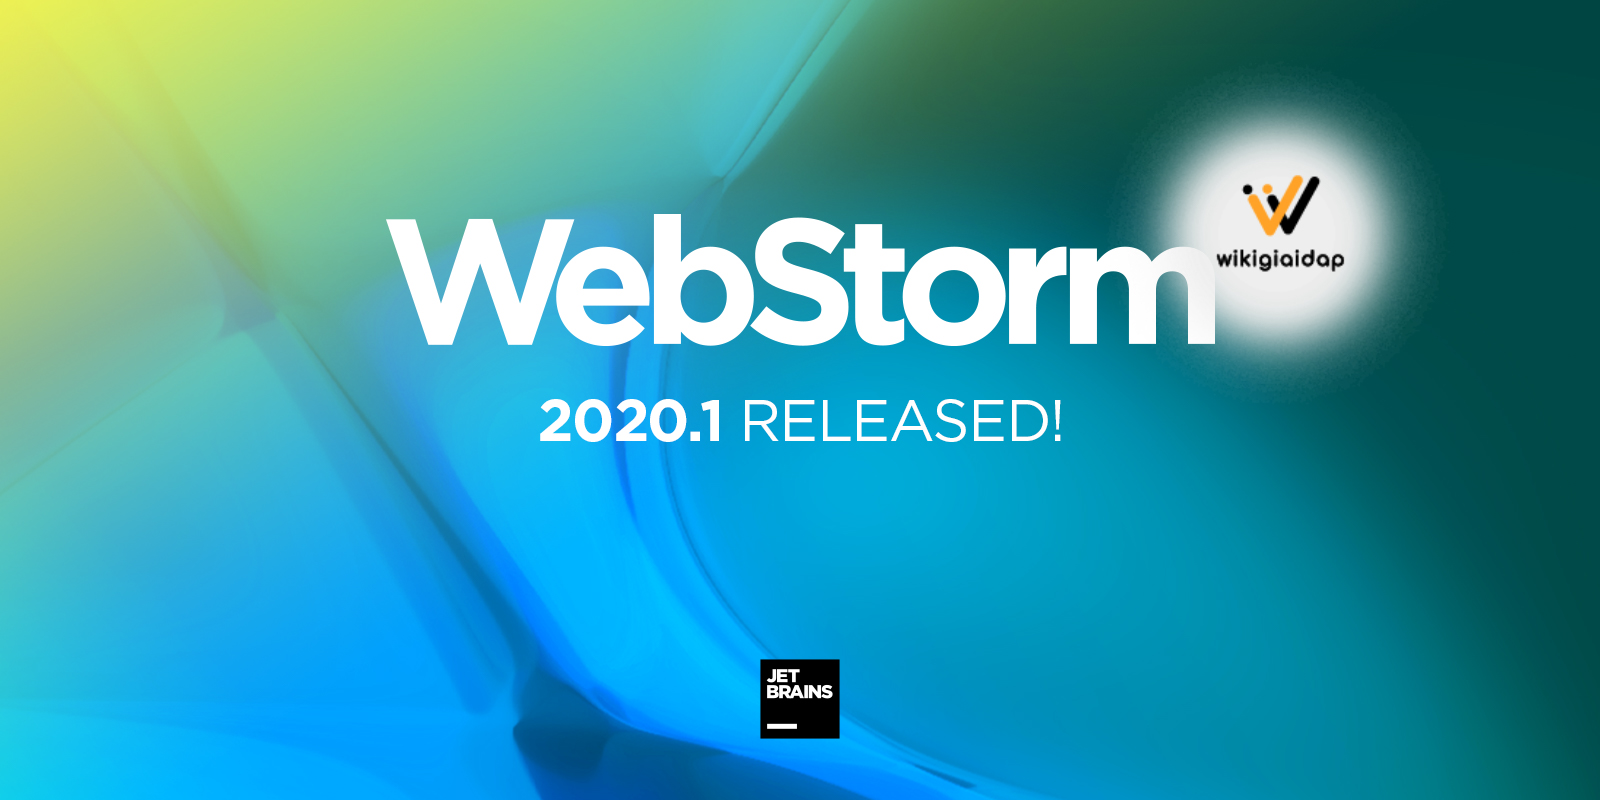 Giới thiệu về phần mềm JetBrains WebStorm 2020